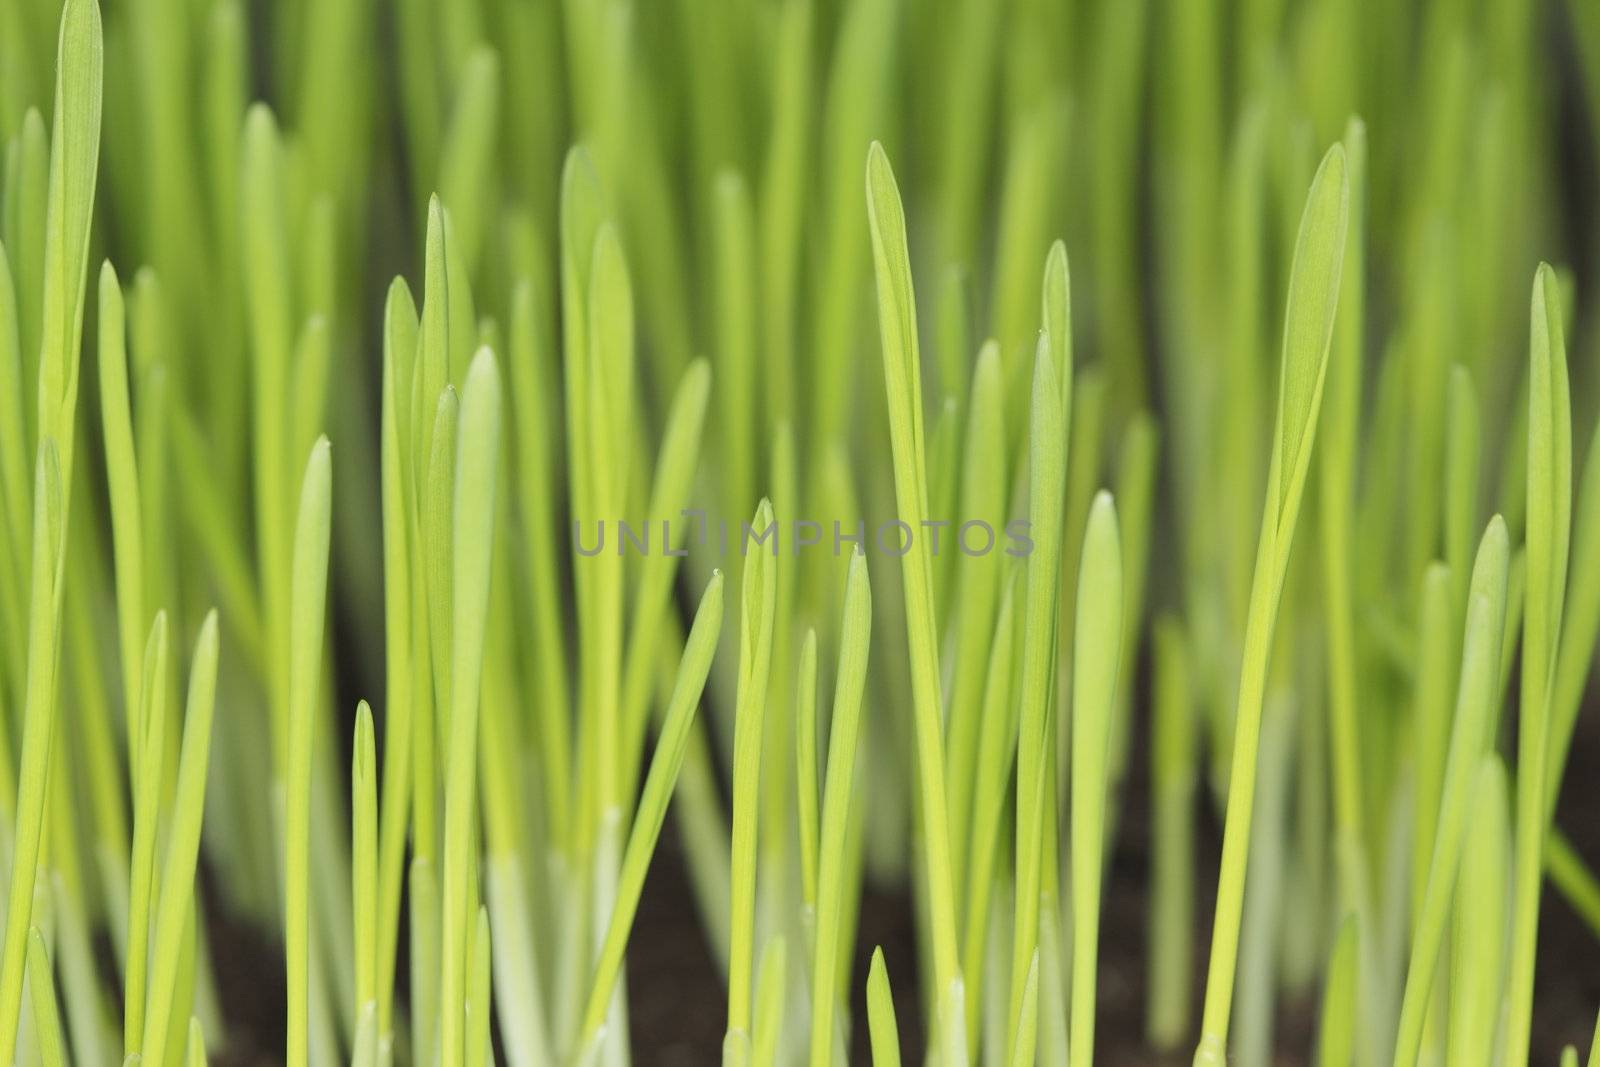 Barley seedlings by Stocksnapper